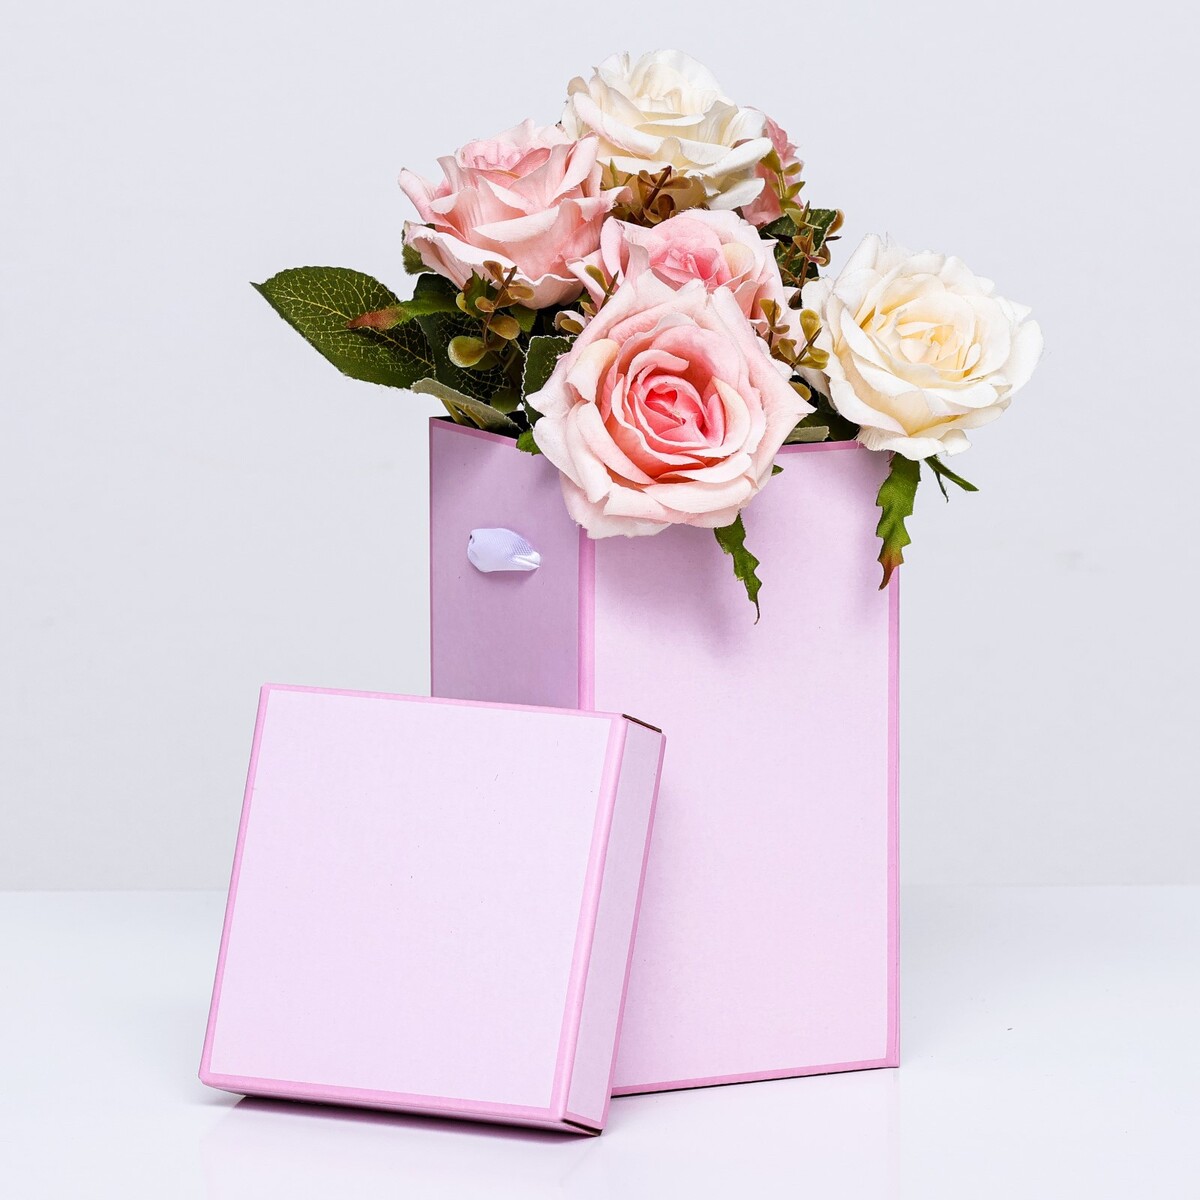 Коробка складная, розовая, 10 х 18 см коробка складная розовая 17 х 25 см